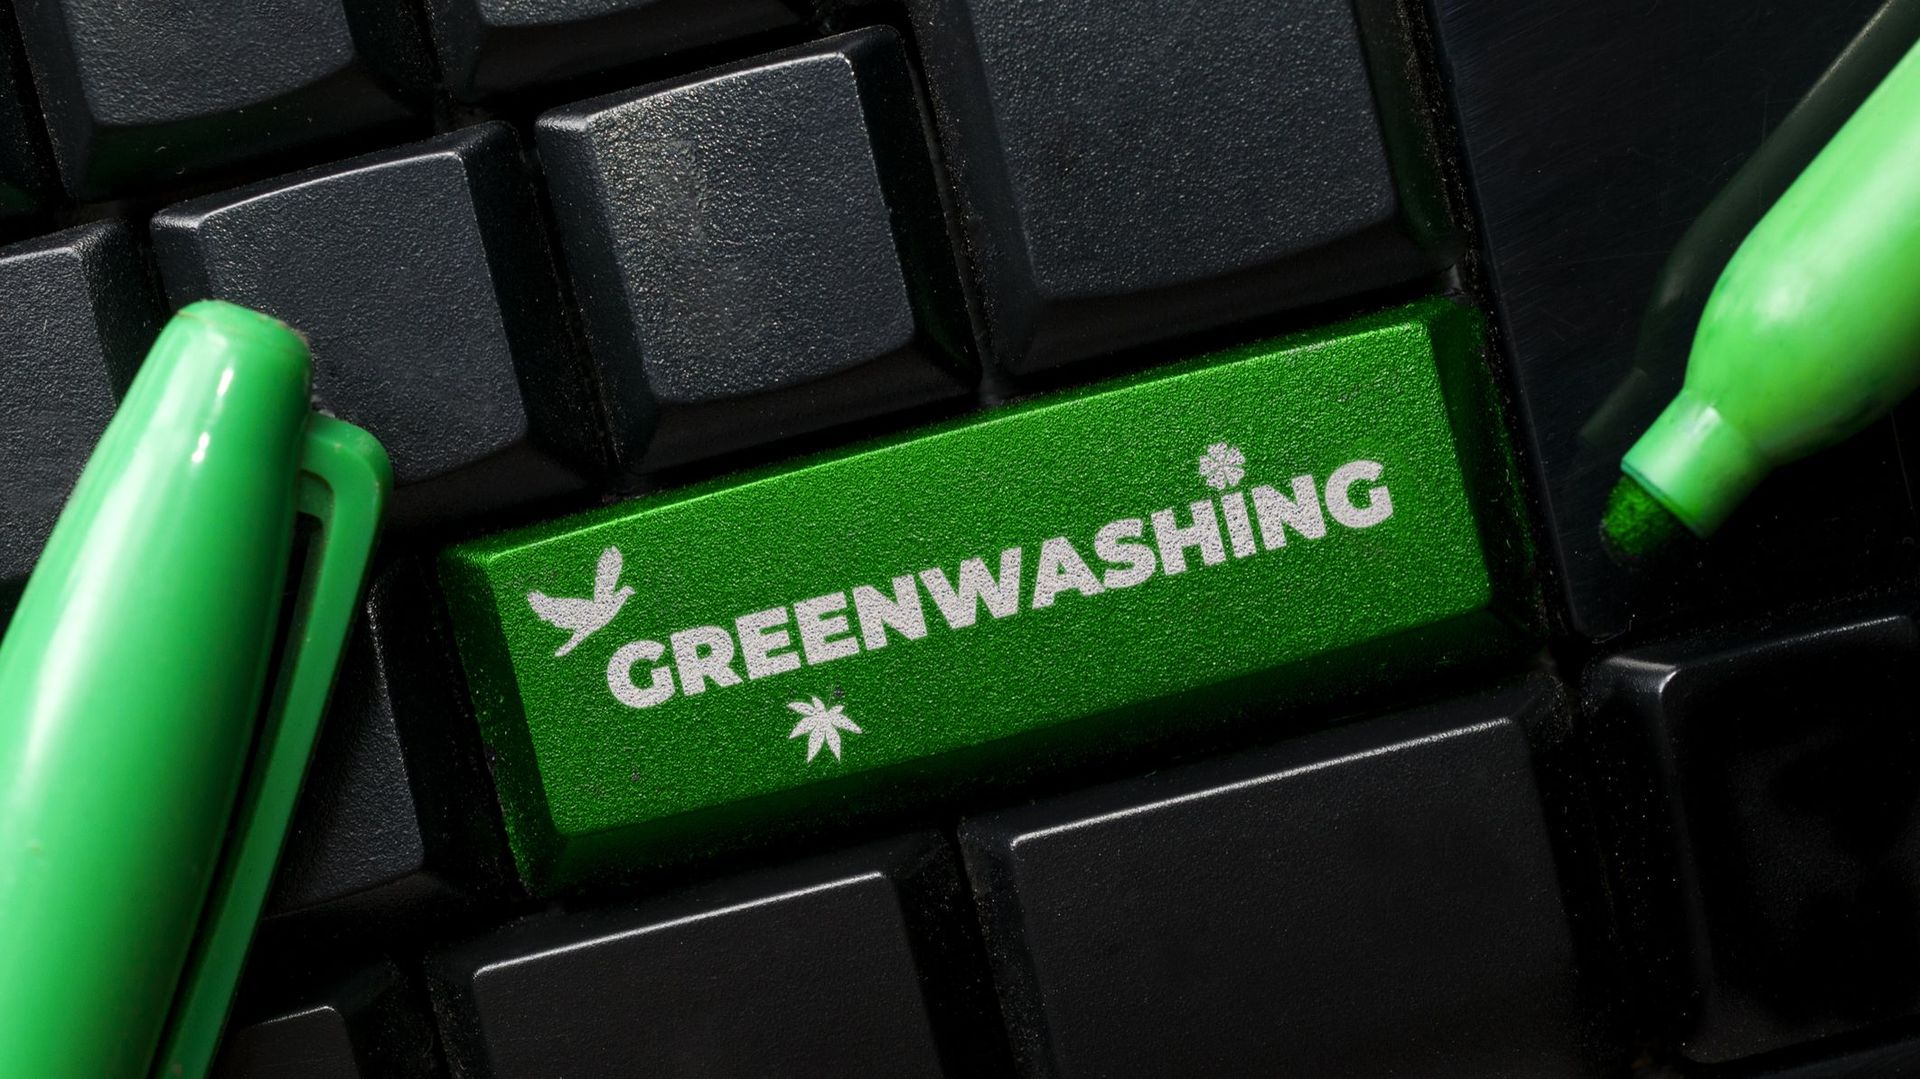 Le greenwashing : 42% des e-commerces vous mentent selon un rapport de la Commission européenne